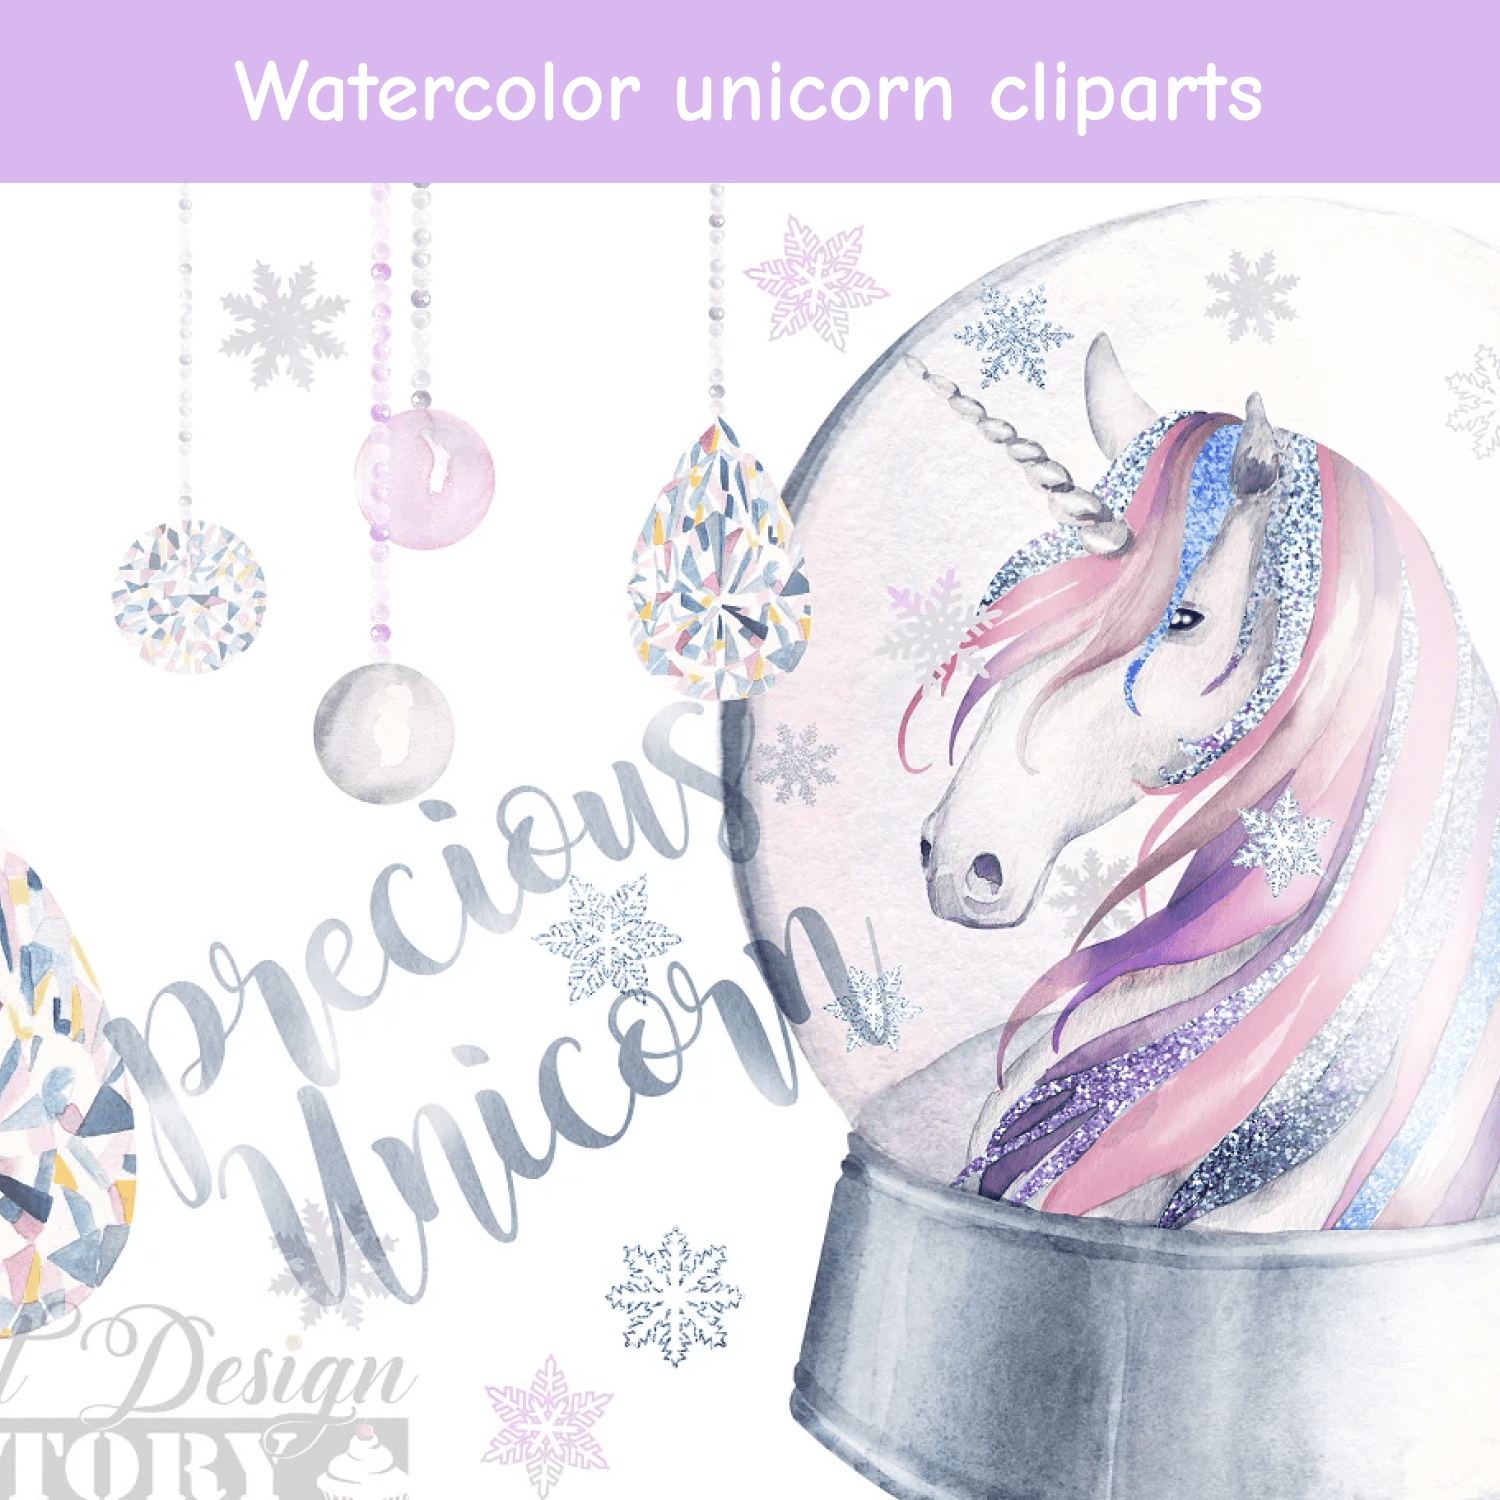 Watercolor unicorn cliparts cover.